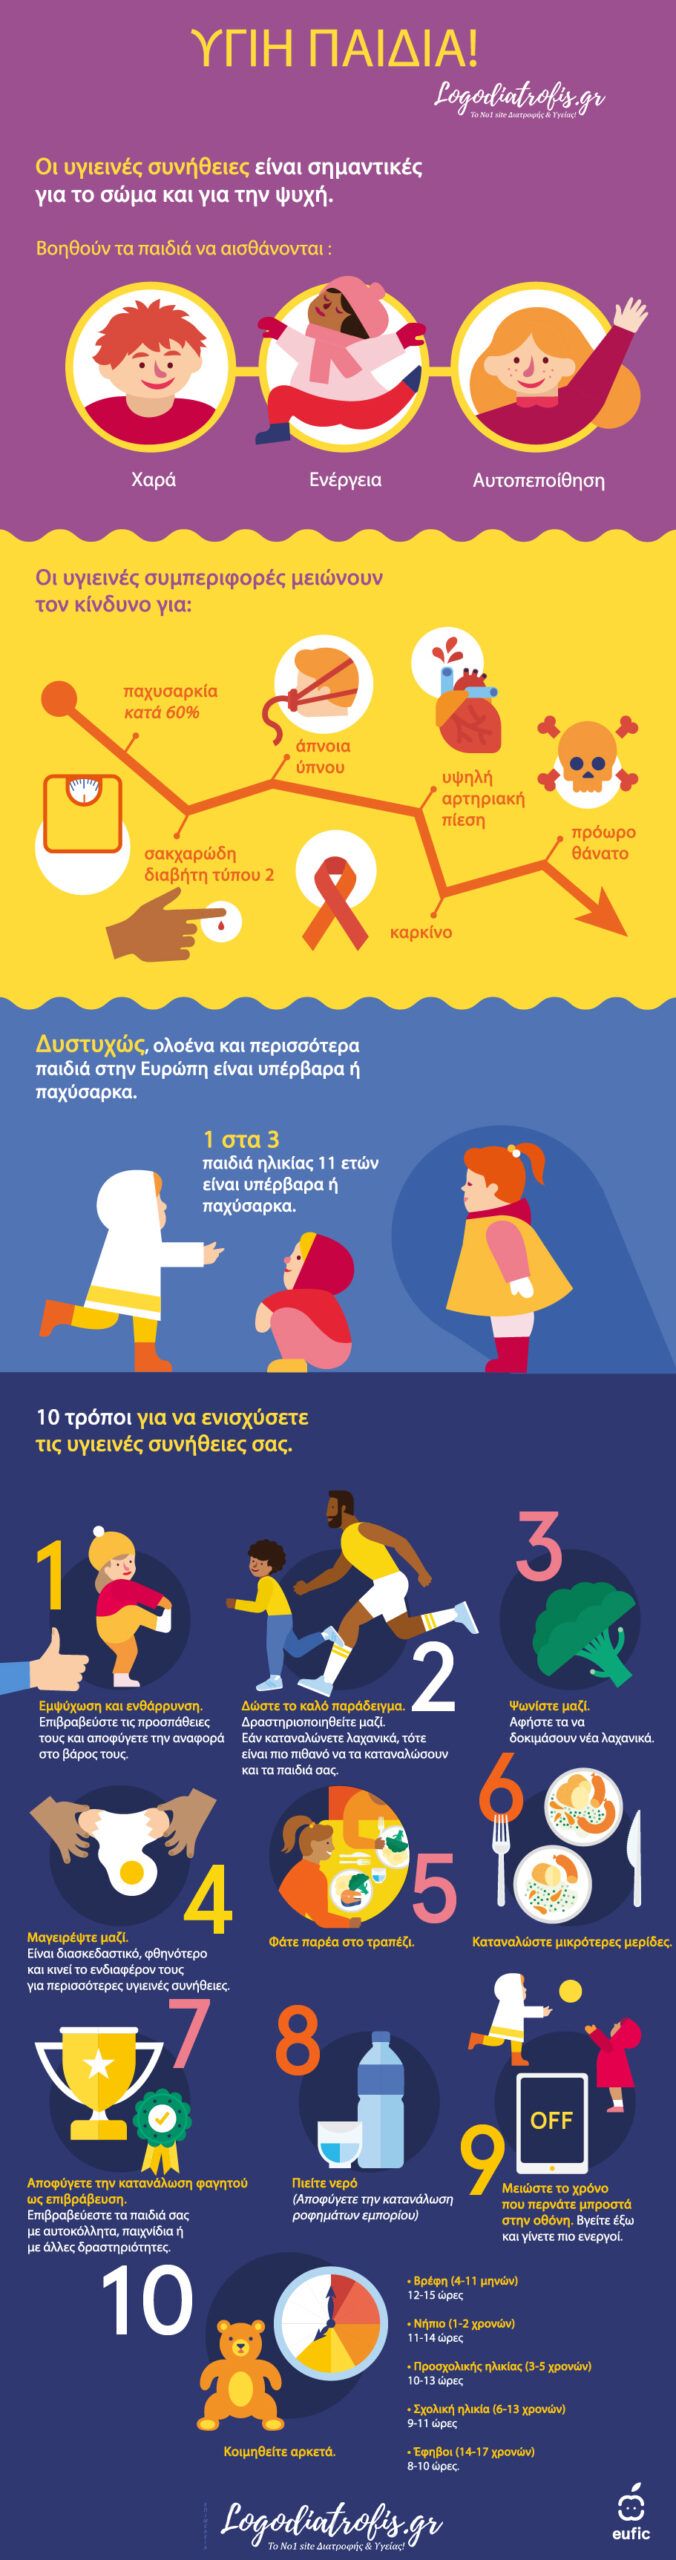 Παιδική παχυσαρκία (Infographic) - παιδική παχυσαρκία